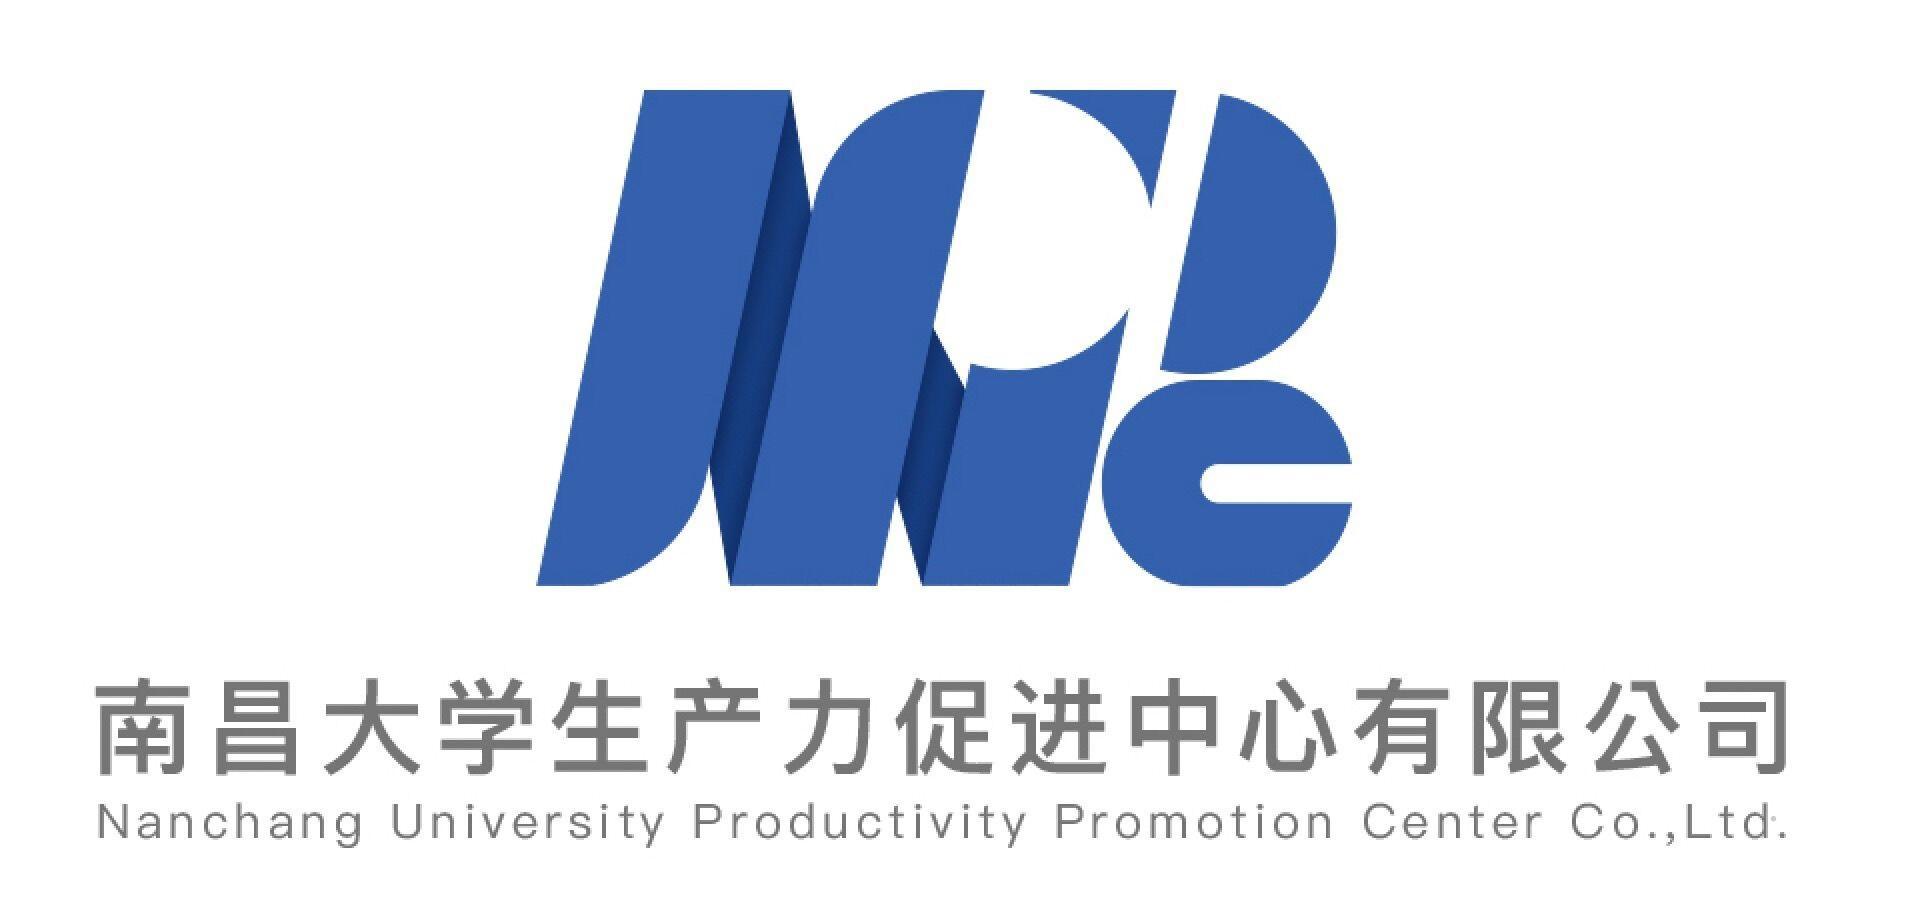 南昌大学生产力促进中心有限公司 NANCHANG UNIVERSITY PRODUCTIVITY PROMOTION CENTER CO.,LTD广告销售